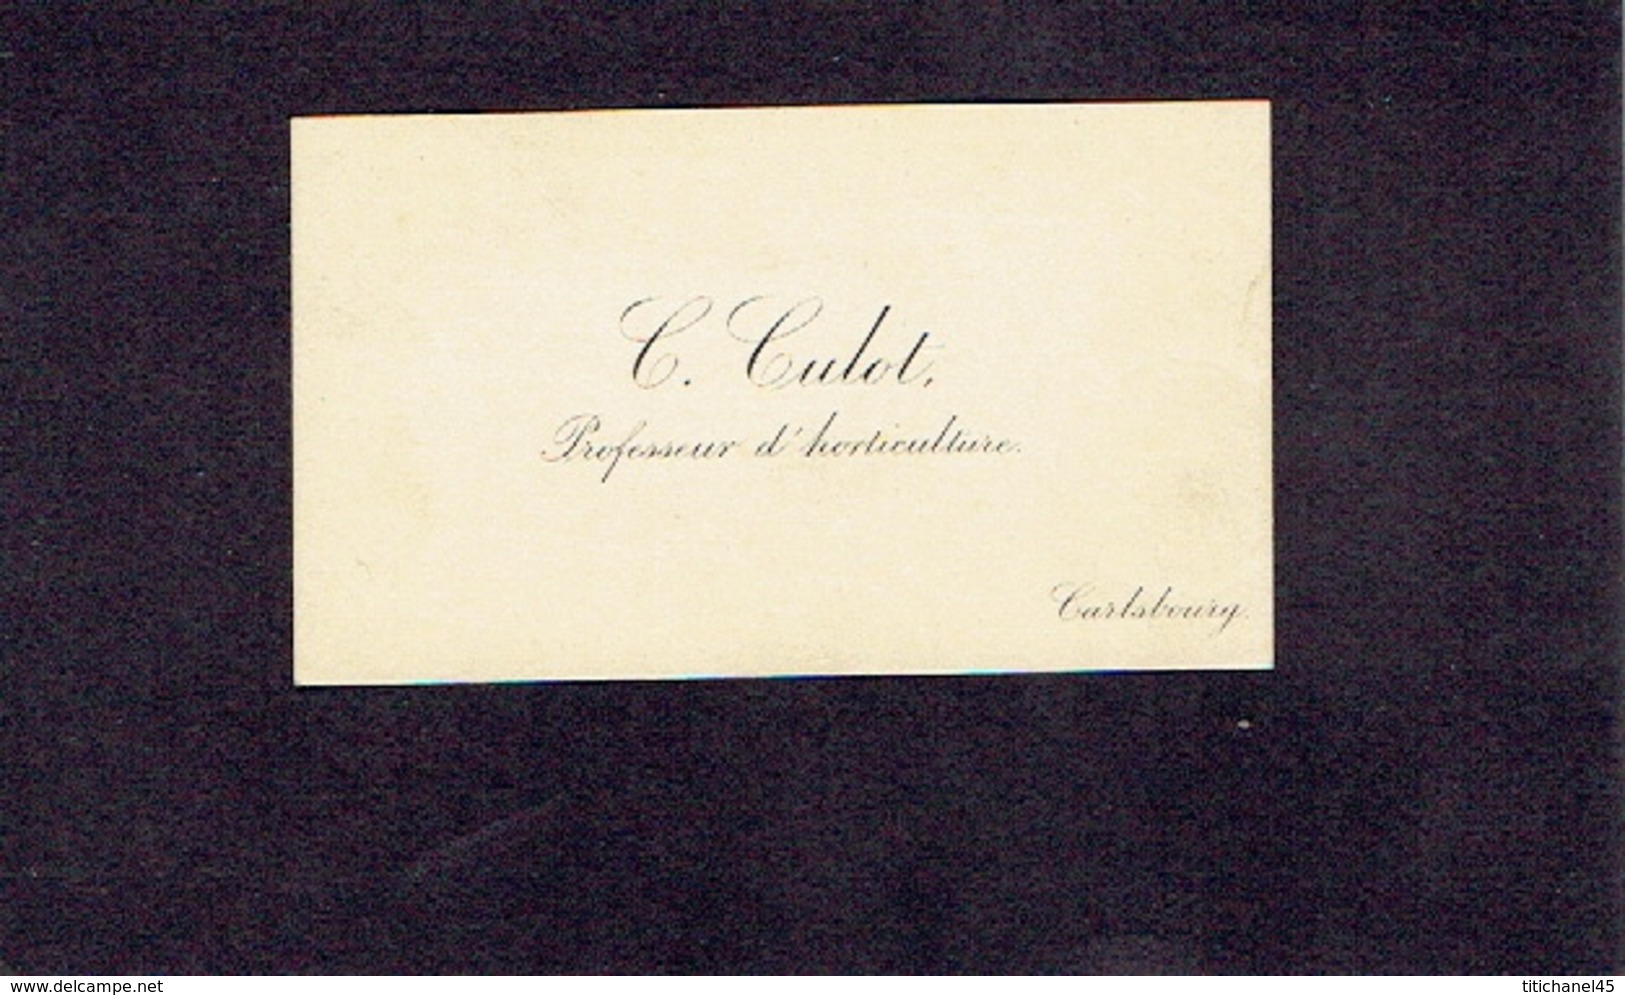 CARLSBOURG 1900-1910 ANCIENNE CARTE DE VISITE - C. CULOT - Professeur D'horticulture - Cartes De Visite